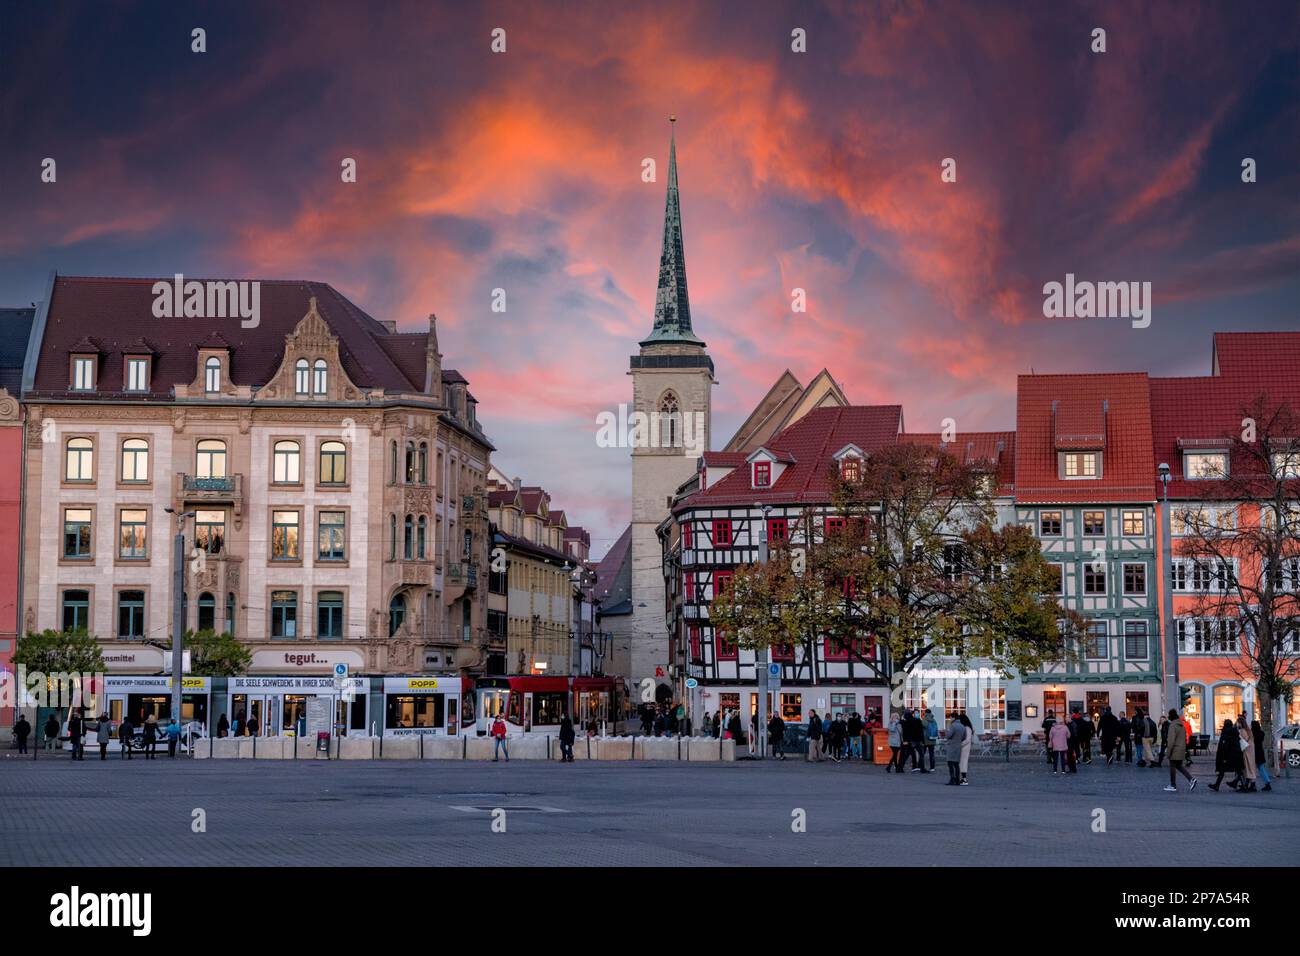 Impressioni fotografiche da Erfurt, capitale della Turingia Foto Stock